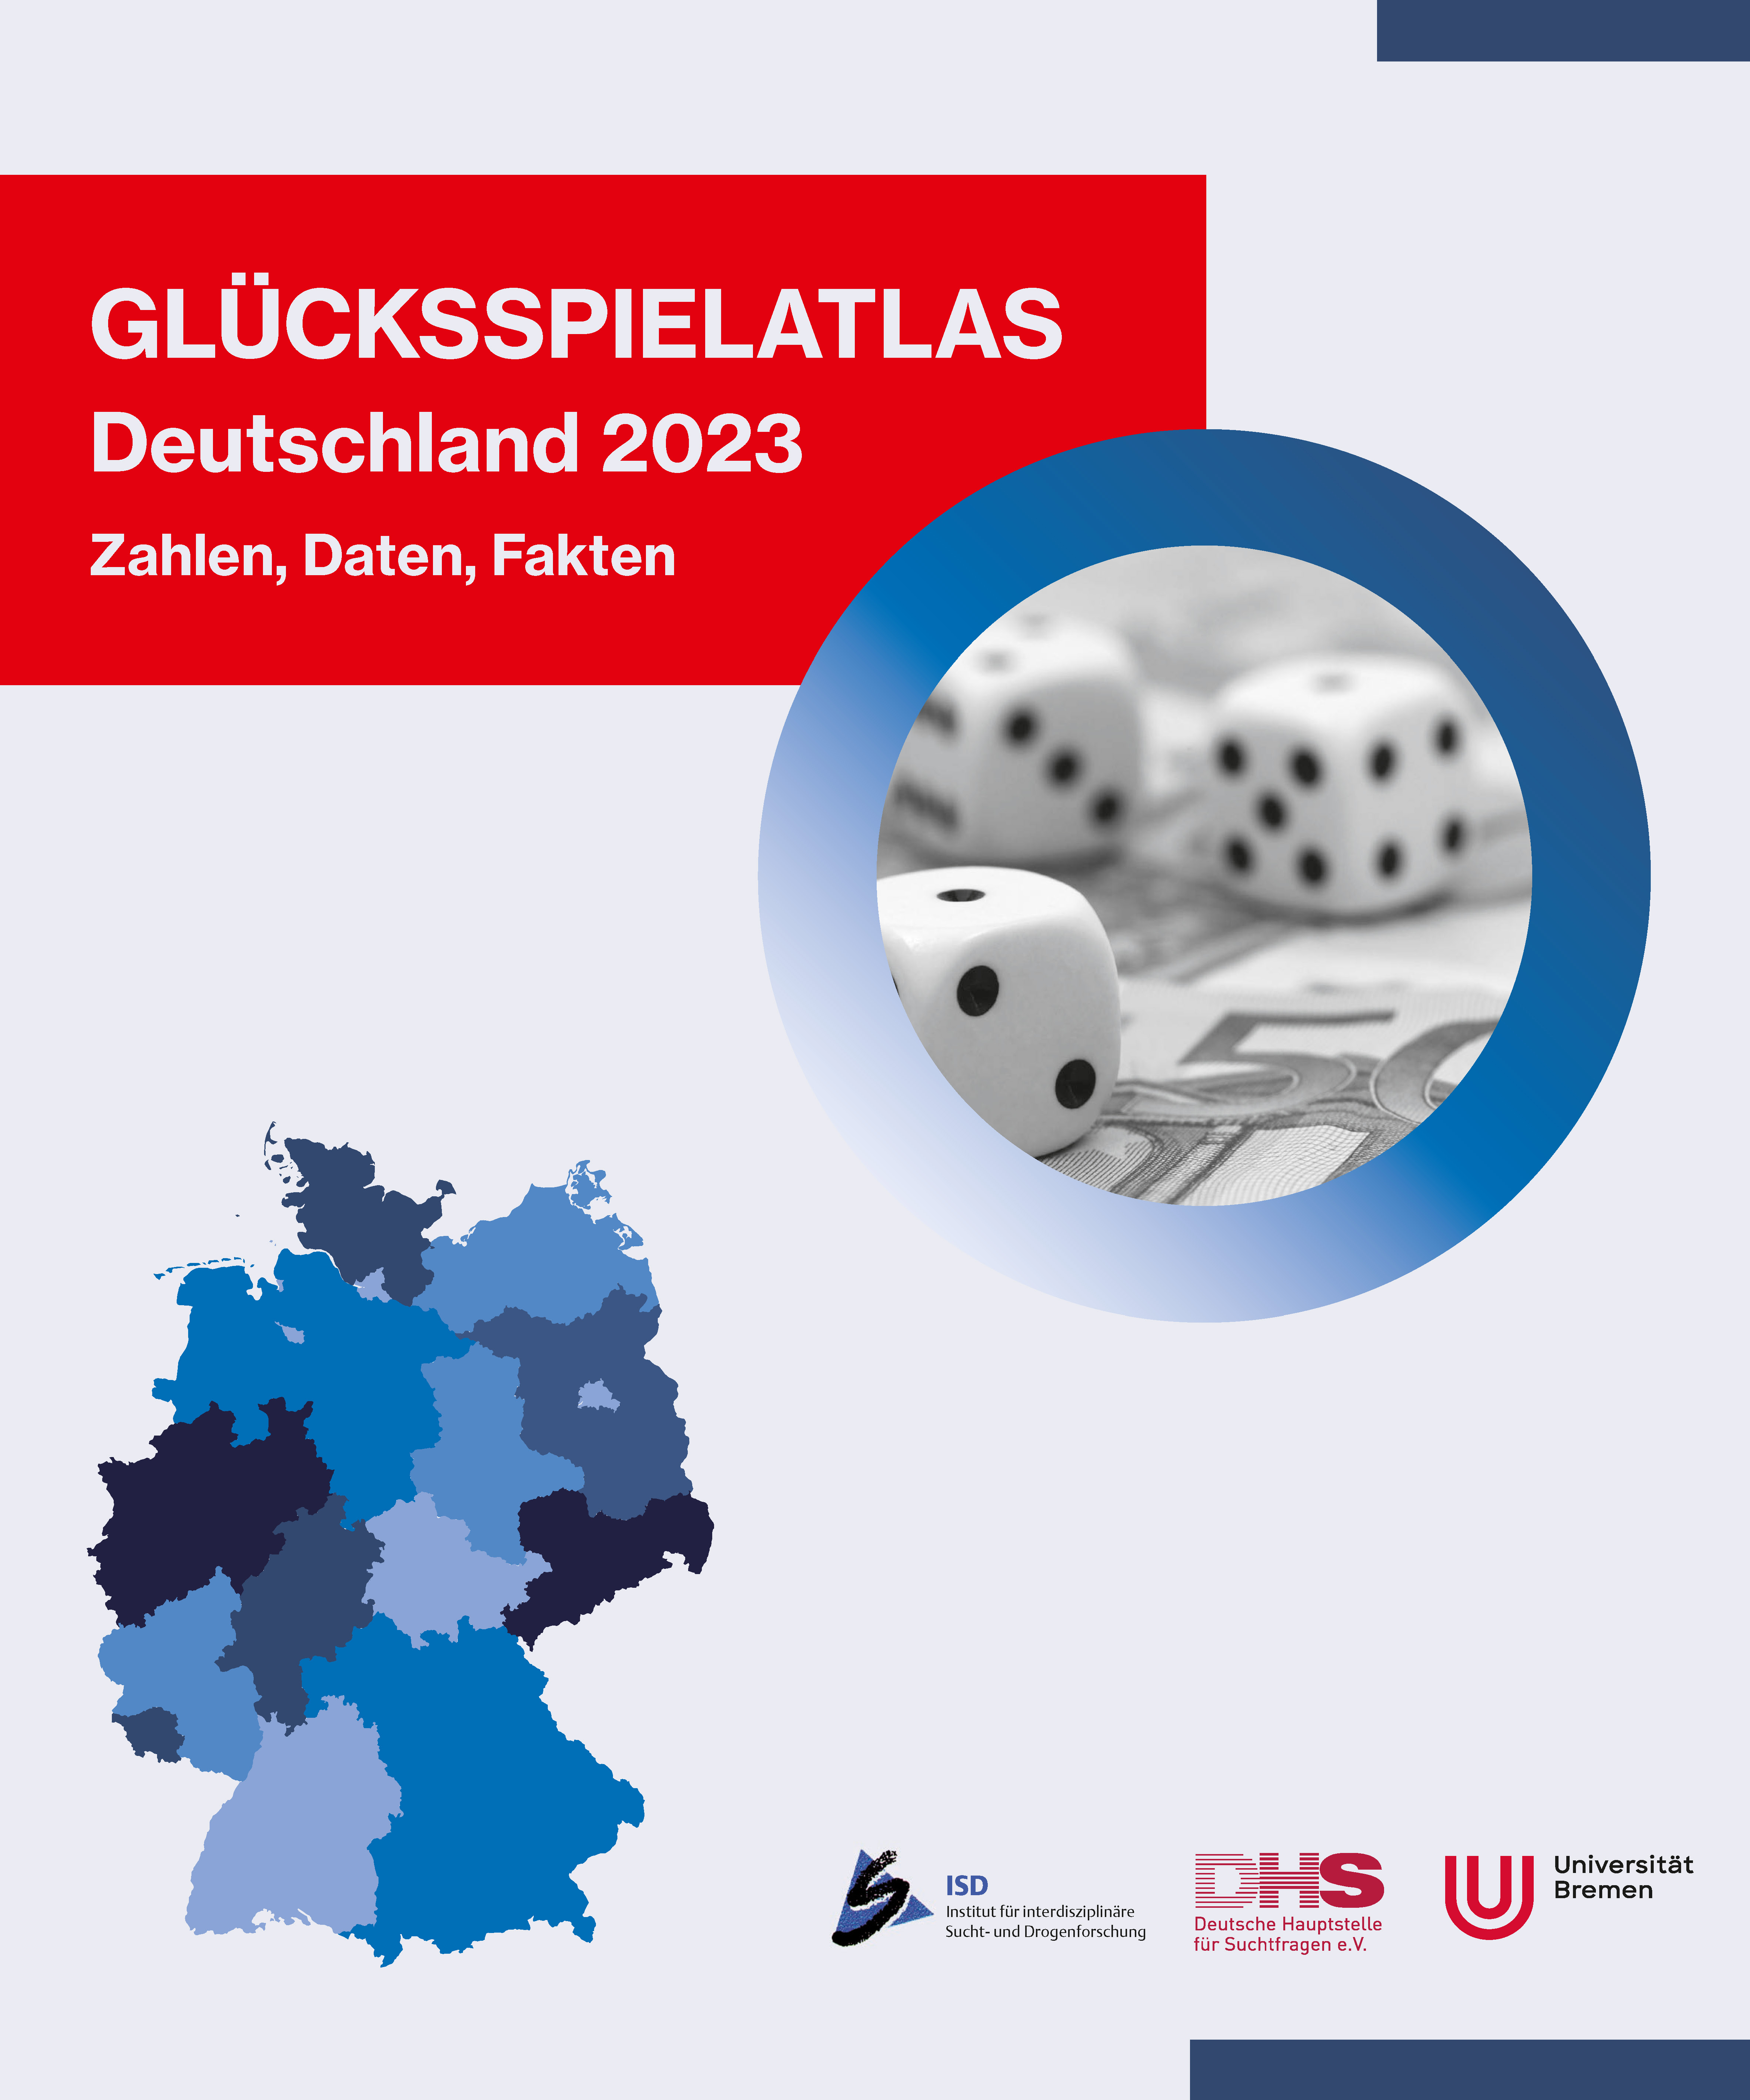 Glücksspielatlas Deutschland 2023